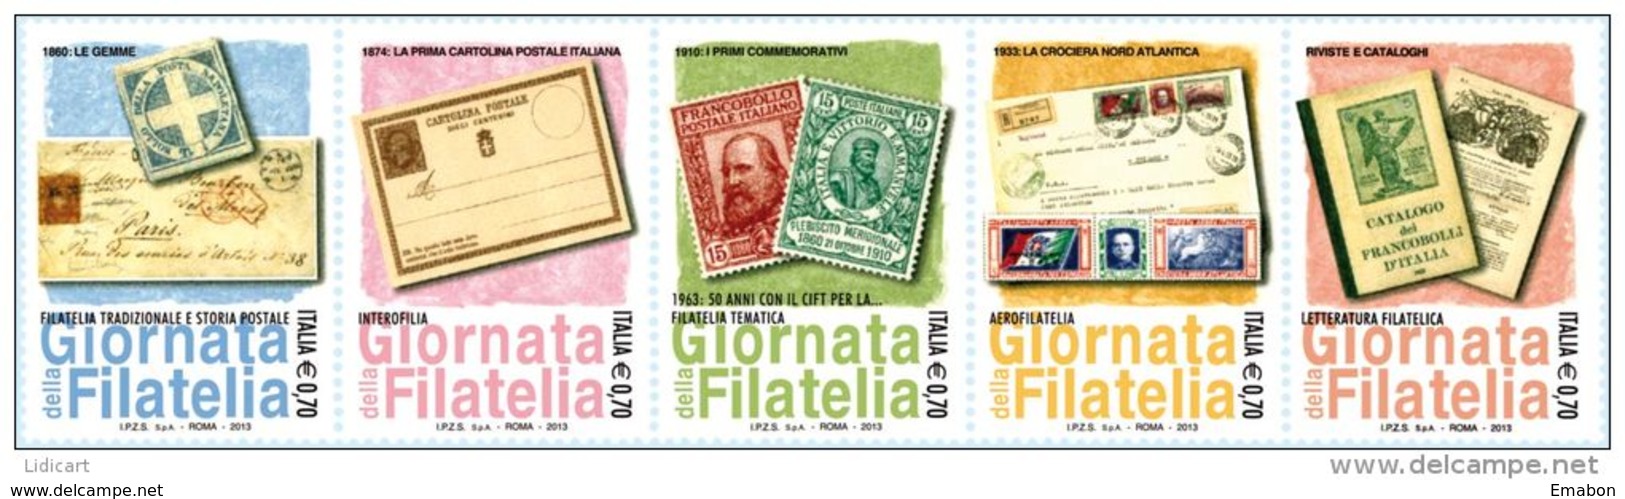 REPUBBLICA ITALIANA  ITALY  ANNO 2013 - STRISCIA GIORNATA DELLA FILATELIA  -  NUOVI MNH ** - 2011-20:  Nuovi